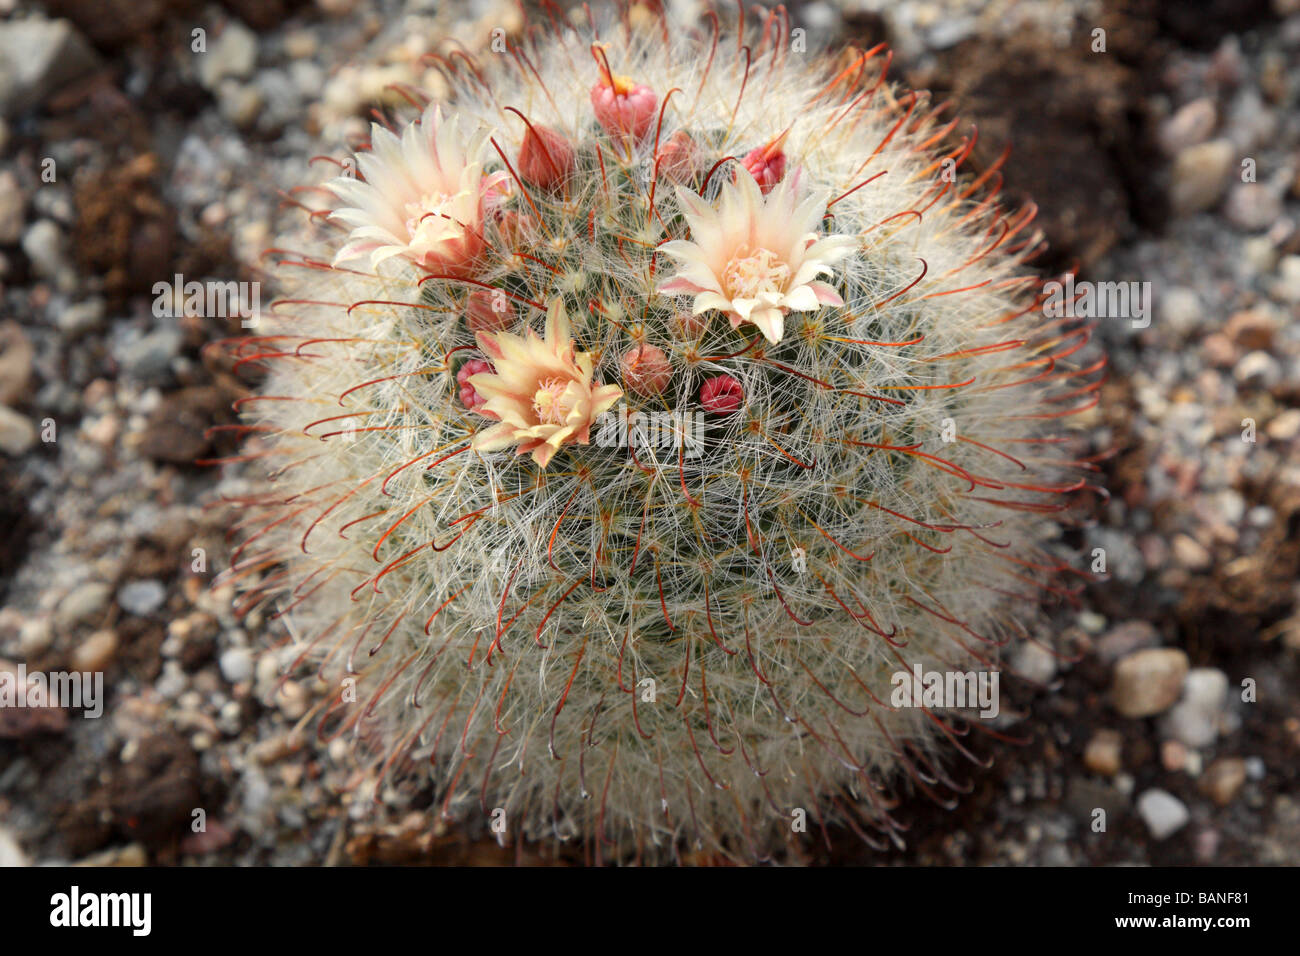 Cactus Mammillaria kunzeana flowers blooming Stock Photo